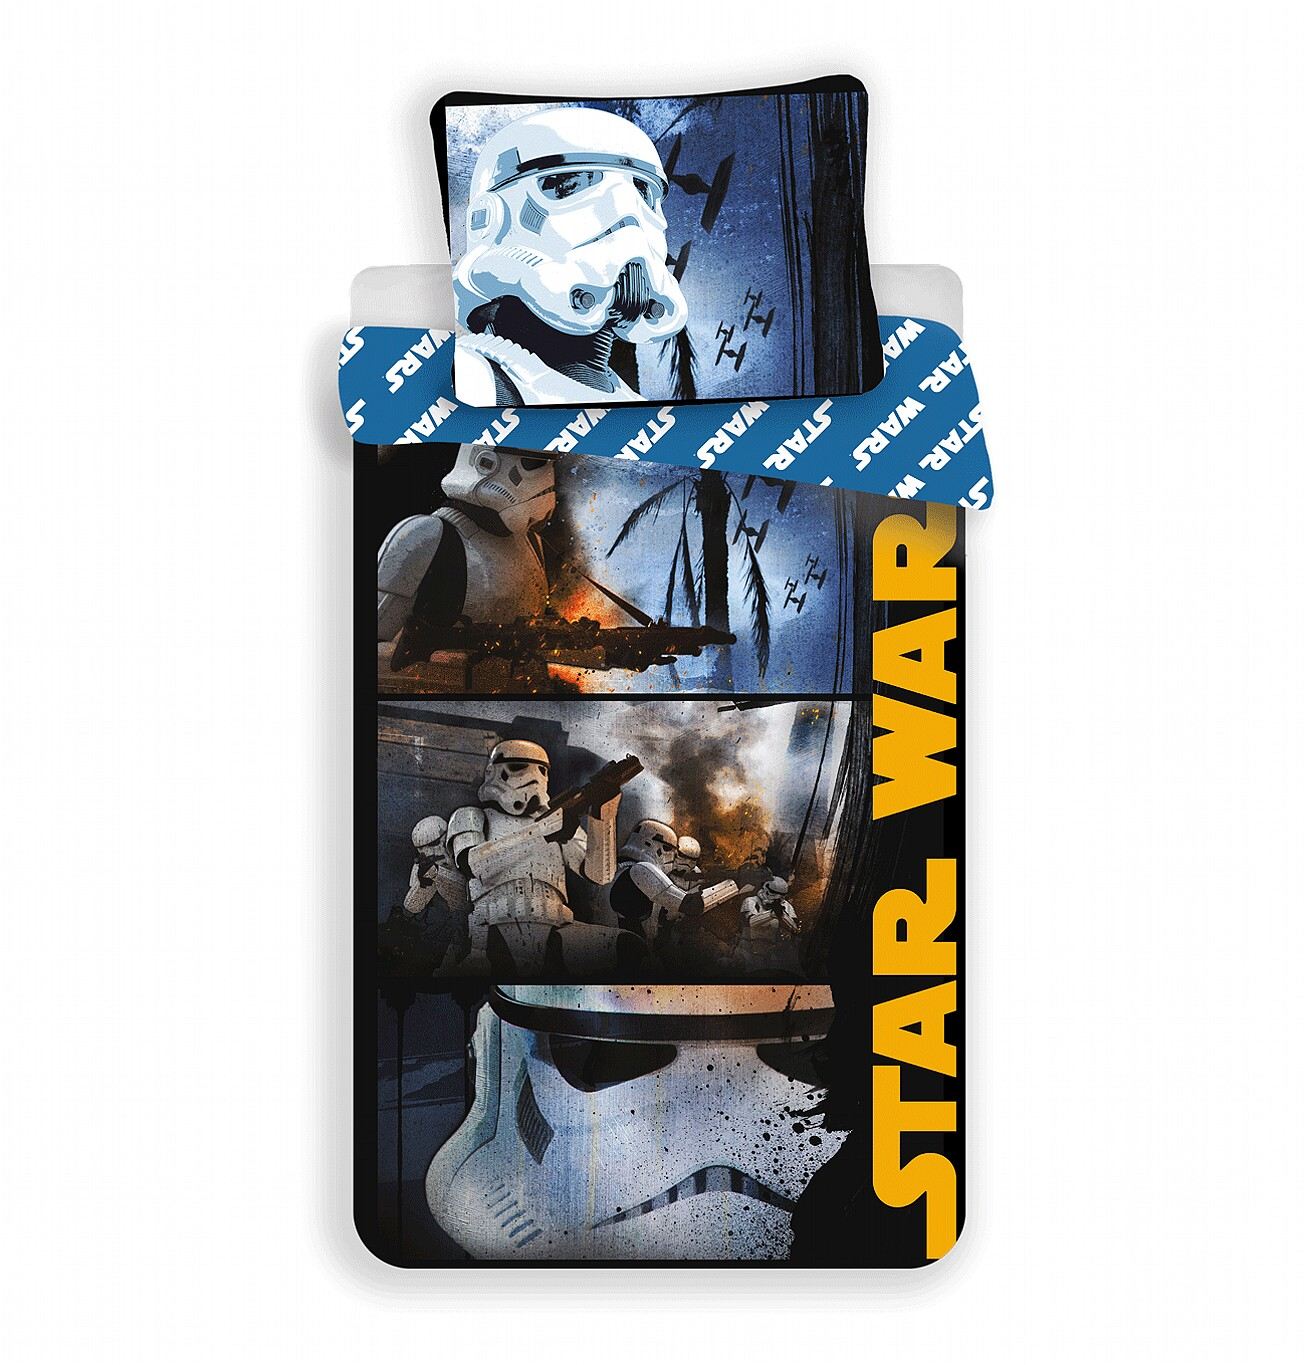 Povlečení bavlna Star Wars Stormtroopers 140x200, 70x90 cm